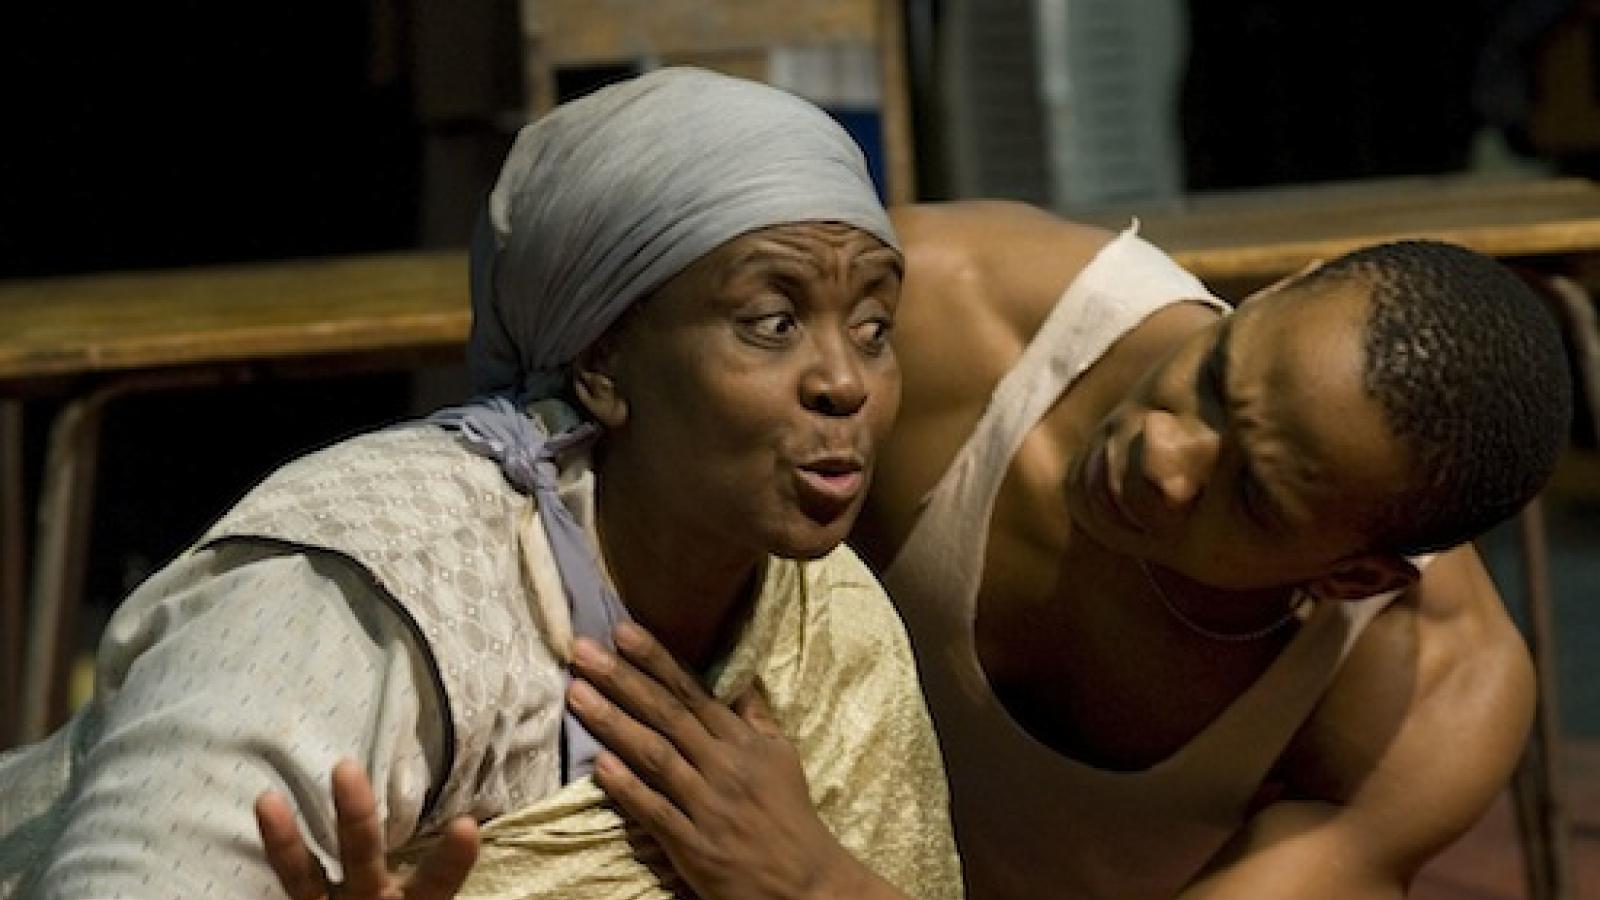 Thoko Ntshinge and Bongile Mantsai in character for "Mies Julie"